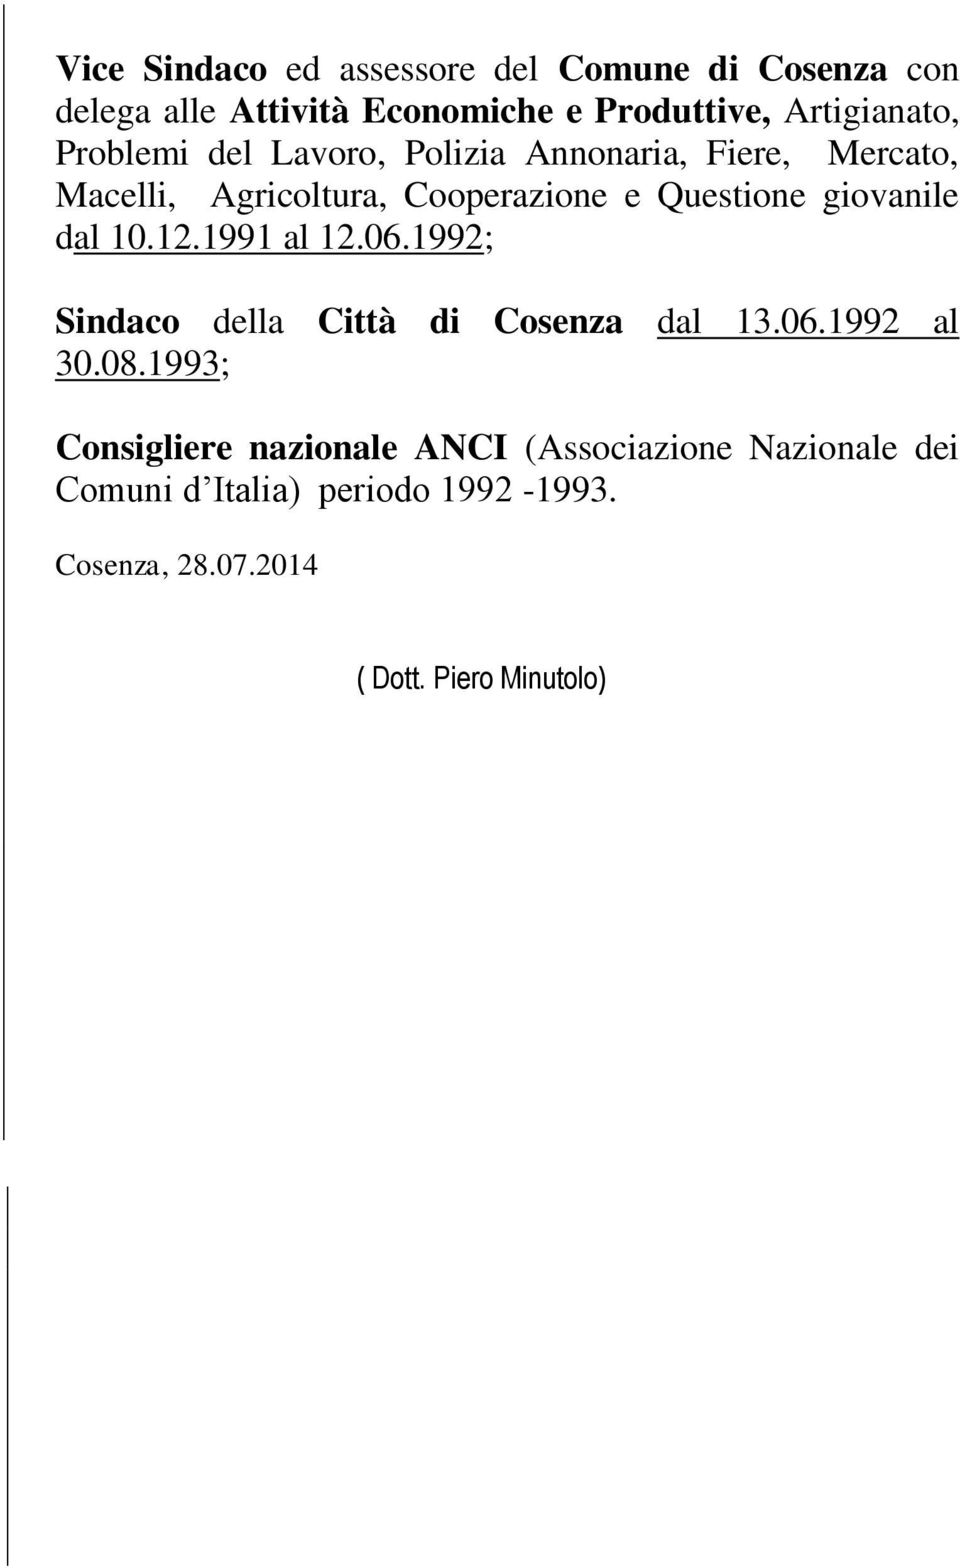 dal 10.12.1991 al 12.06.1992; Sindaco della Città di Cosenza dal 13.06.1992 al 30.08.